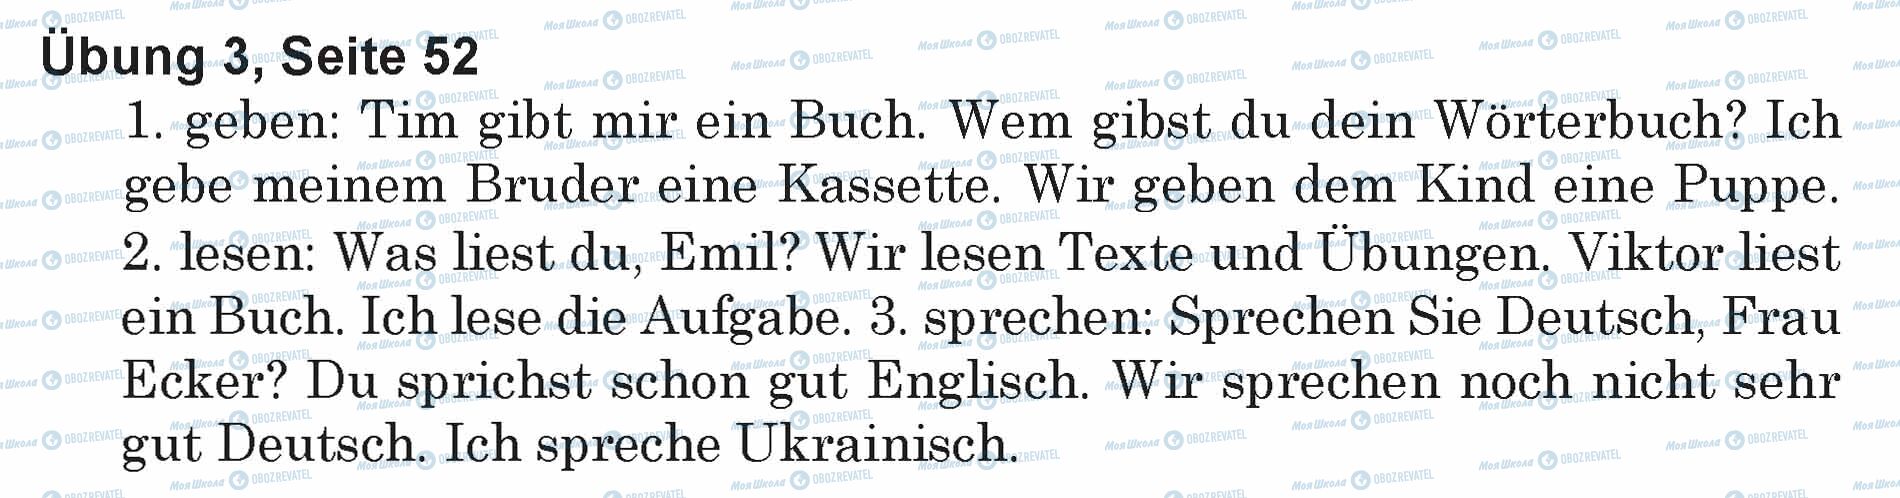 ГДЗ Немецкий язык 5 класс страница Ubung 3, Seite 52